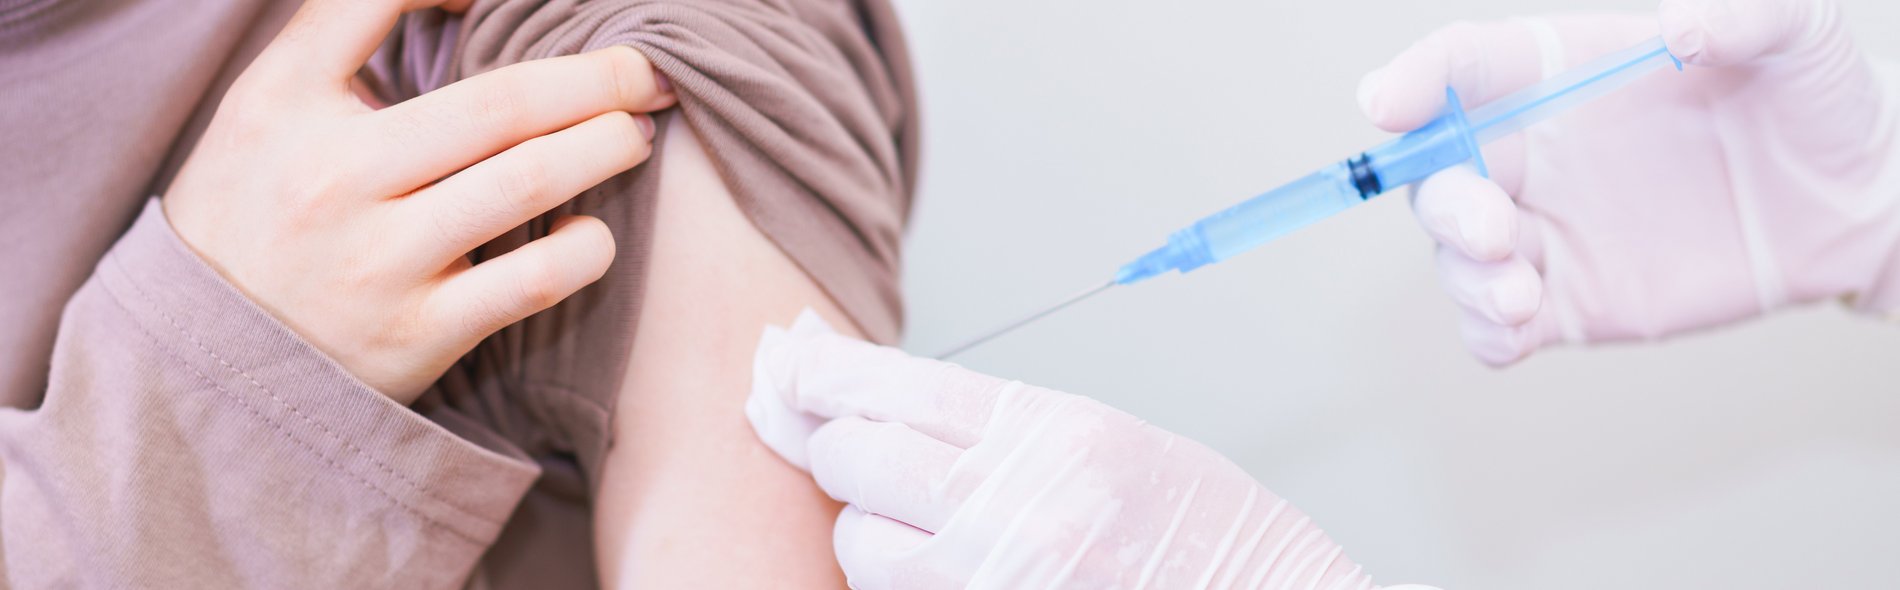 Hpv impfung nebenwirkungen unfruchtbarkeit - Hpv impfung nebenwirkungen